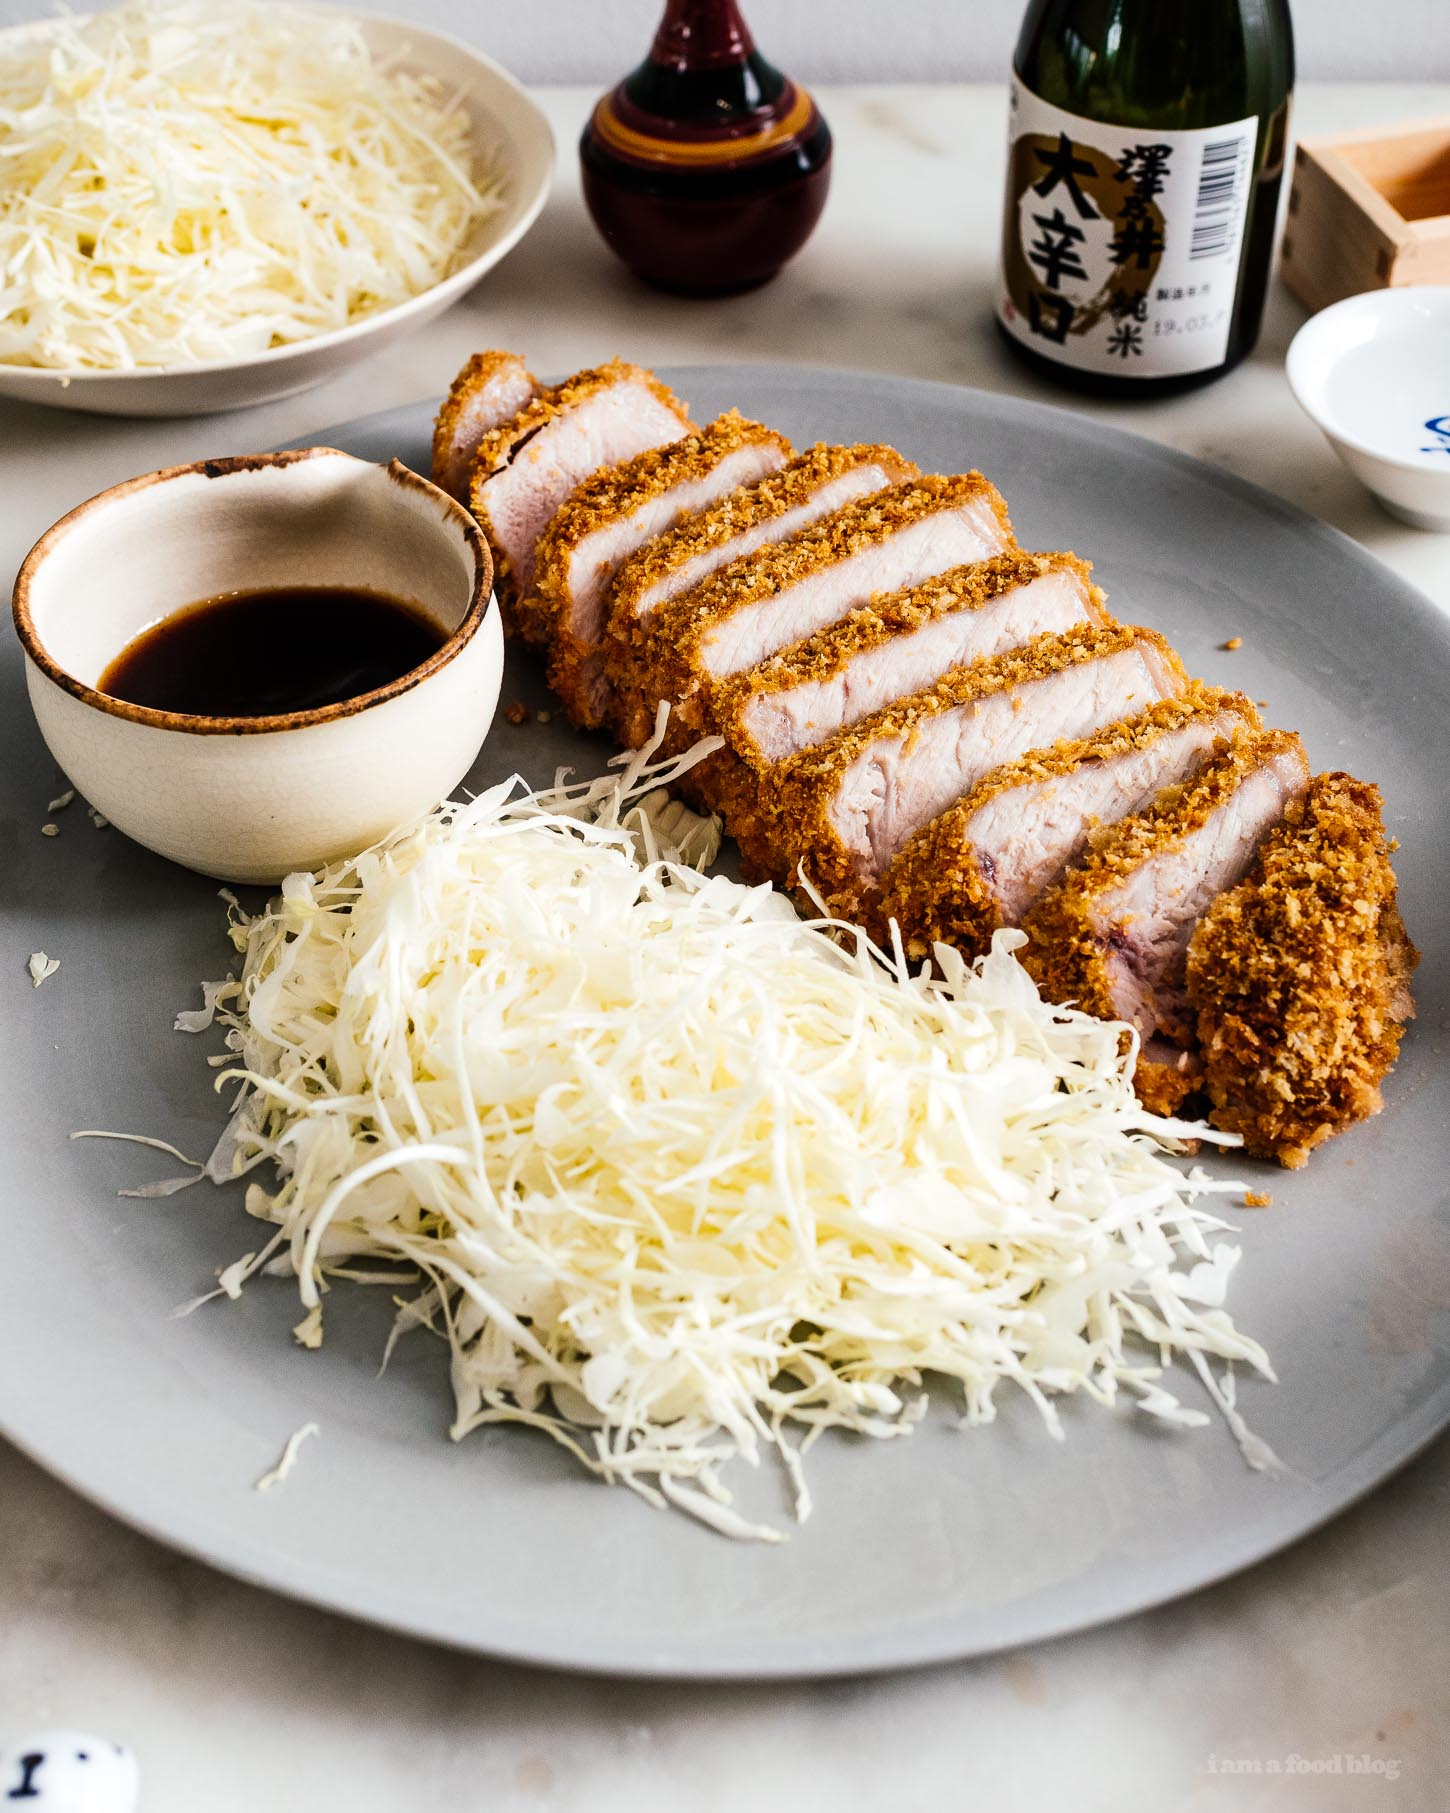 Easy Baked Pork Tonkatsu - Μια εξαιρετικά πηχτή, σούπερ ζουμερή χοιρινή μπριζόλα φτιαγμένη σε στυλ τονκάτσου, με ελαφρύ και τραγανό panko, μόλις ψημένο αντί για τηγανητό. #ιαπωνικό φαγητό #ιαπωνικό #tonkatsu #χοιρινή μπριζόλα #χοιρινό #συνταγές #ψητό #δείπνο #easydinner